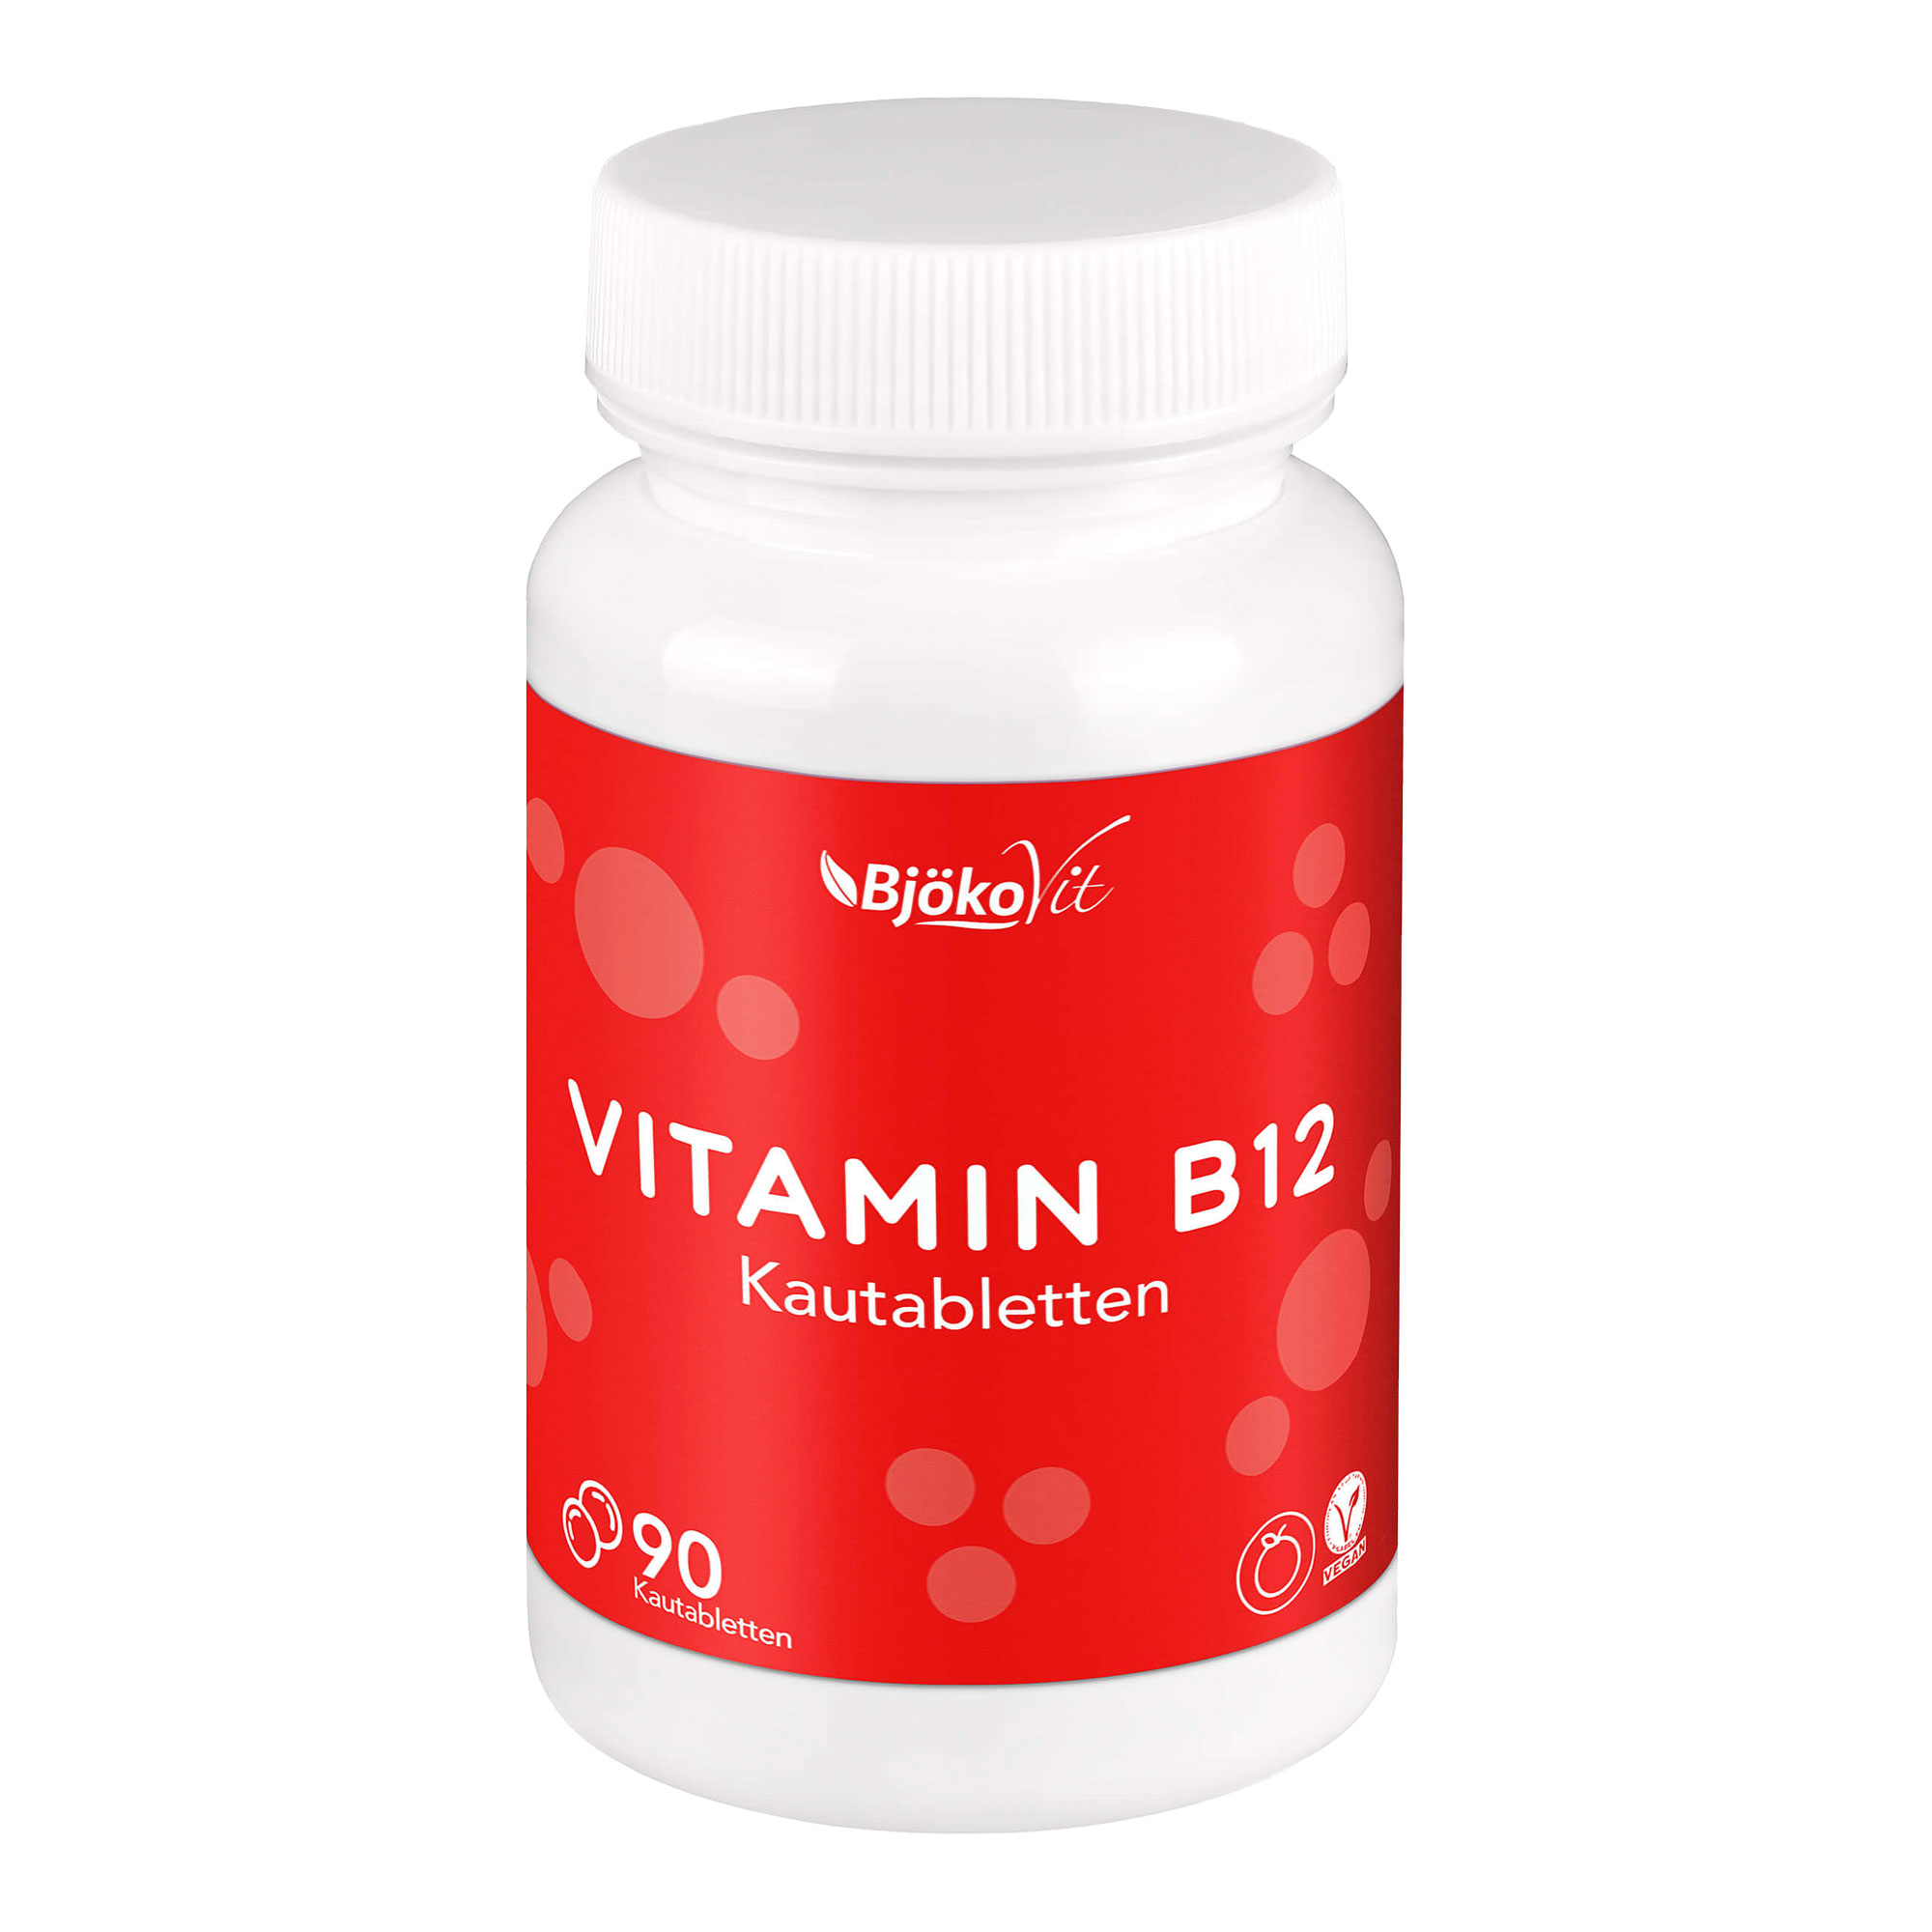 Nahrungsergänzungsmittel mit Vitamin B12. Mit Orangen-Geschmack. Vegan.